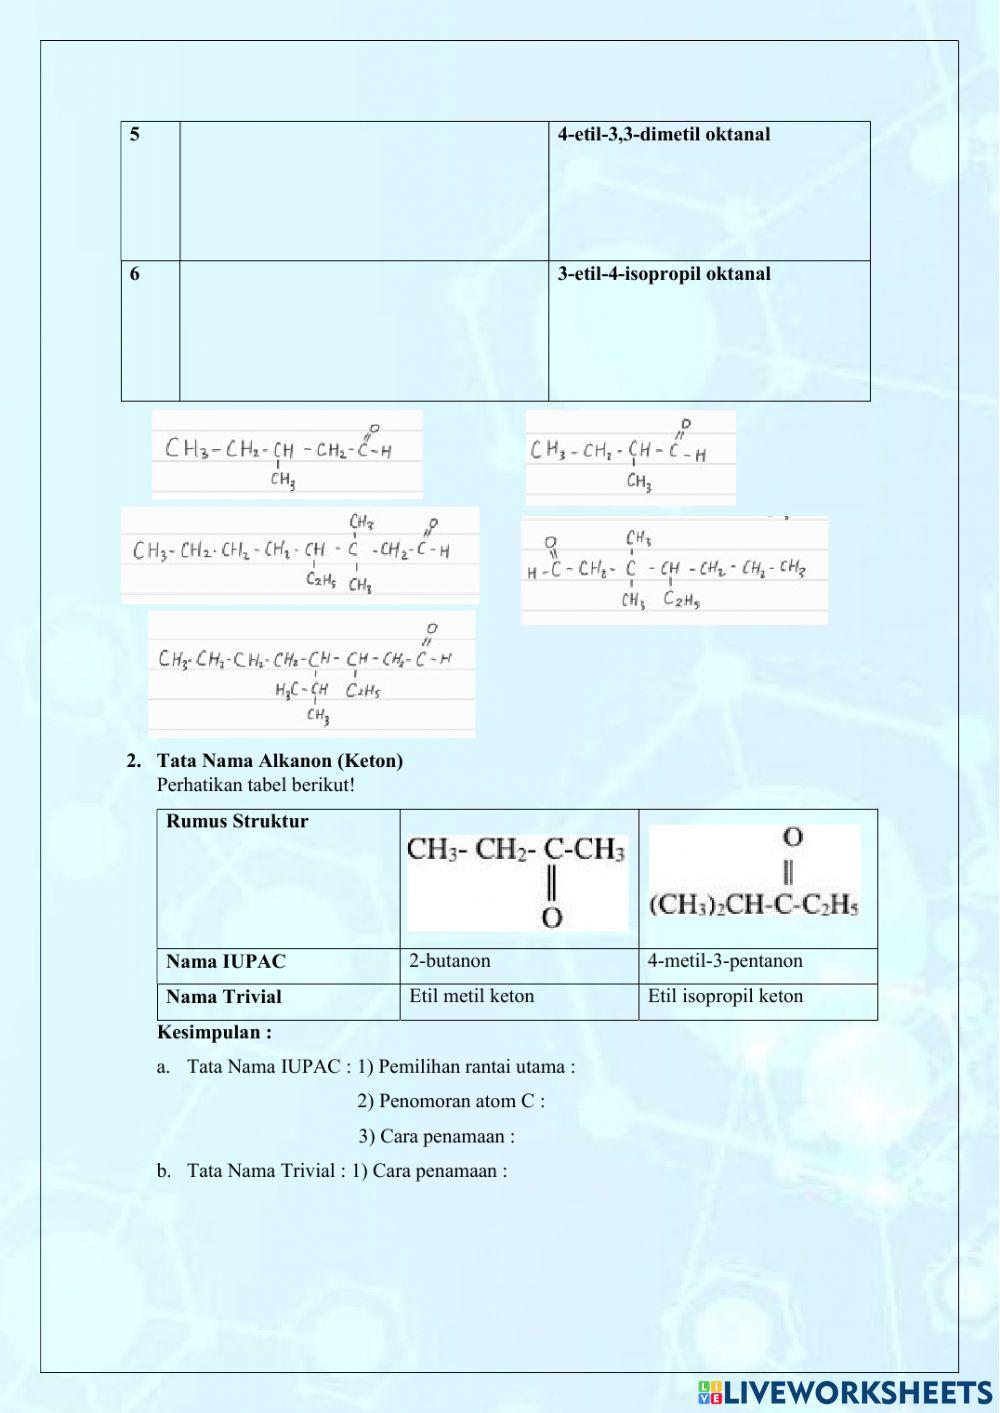 LKPD Senyawa Alkanal, Alkanon, dan Haloalkana